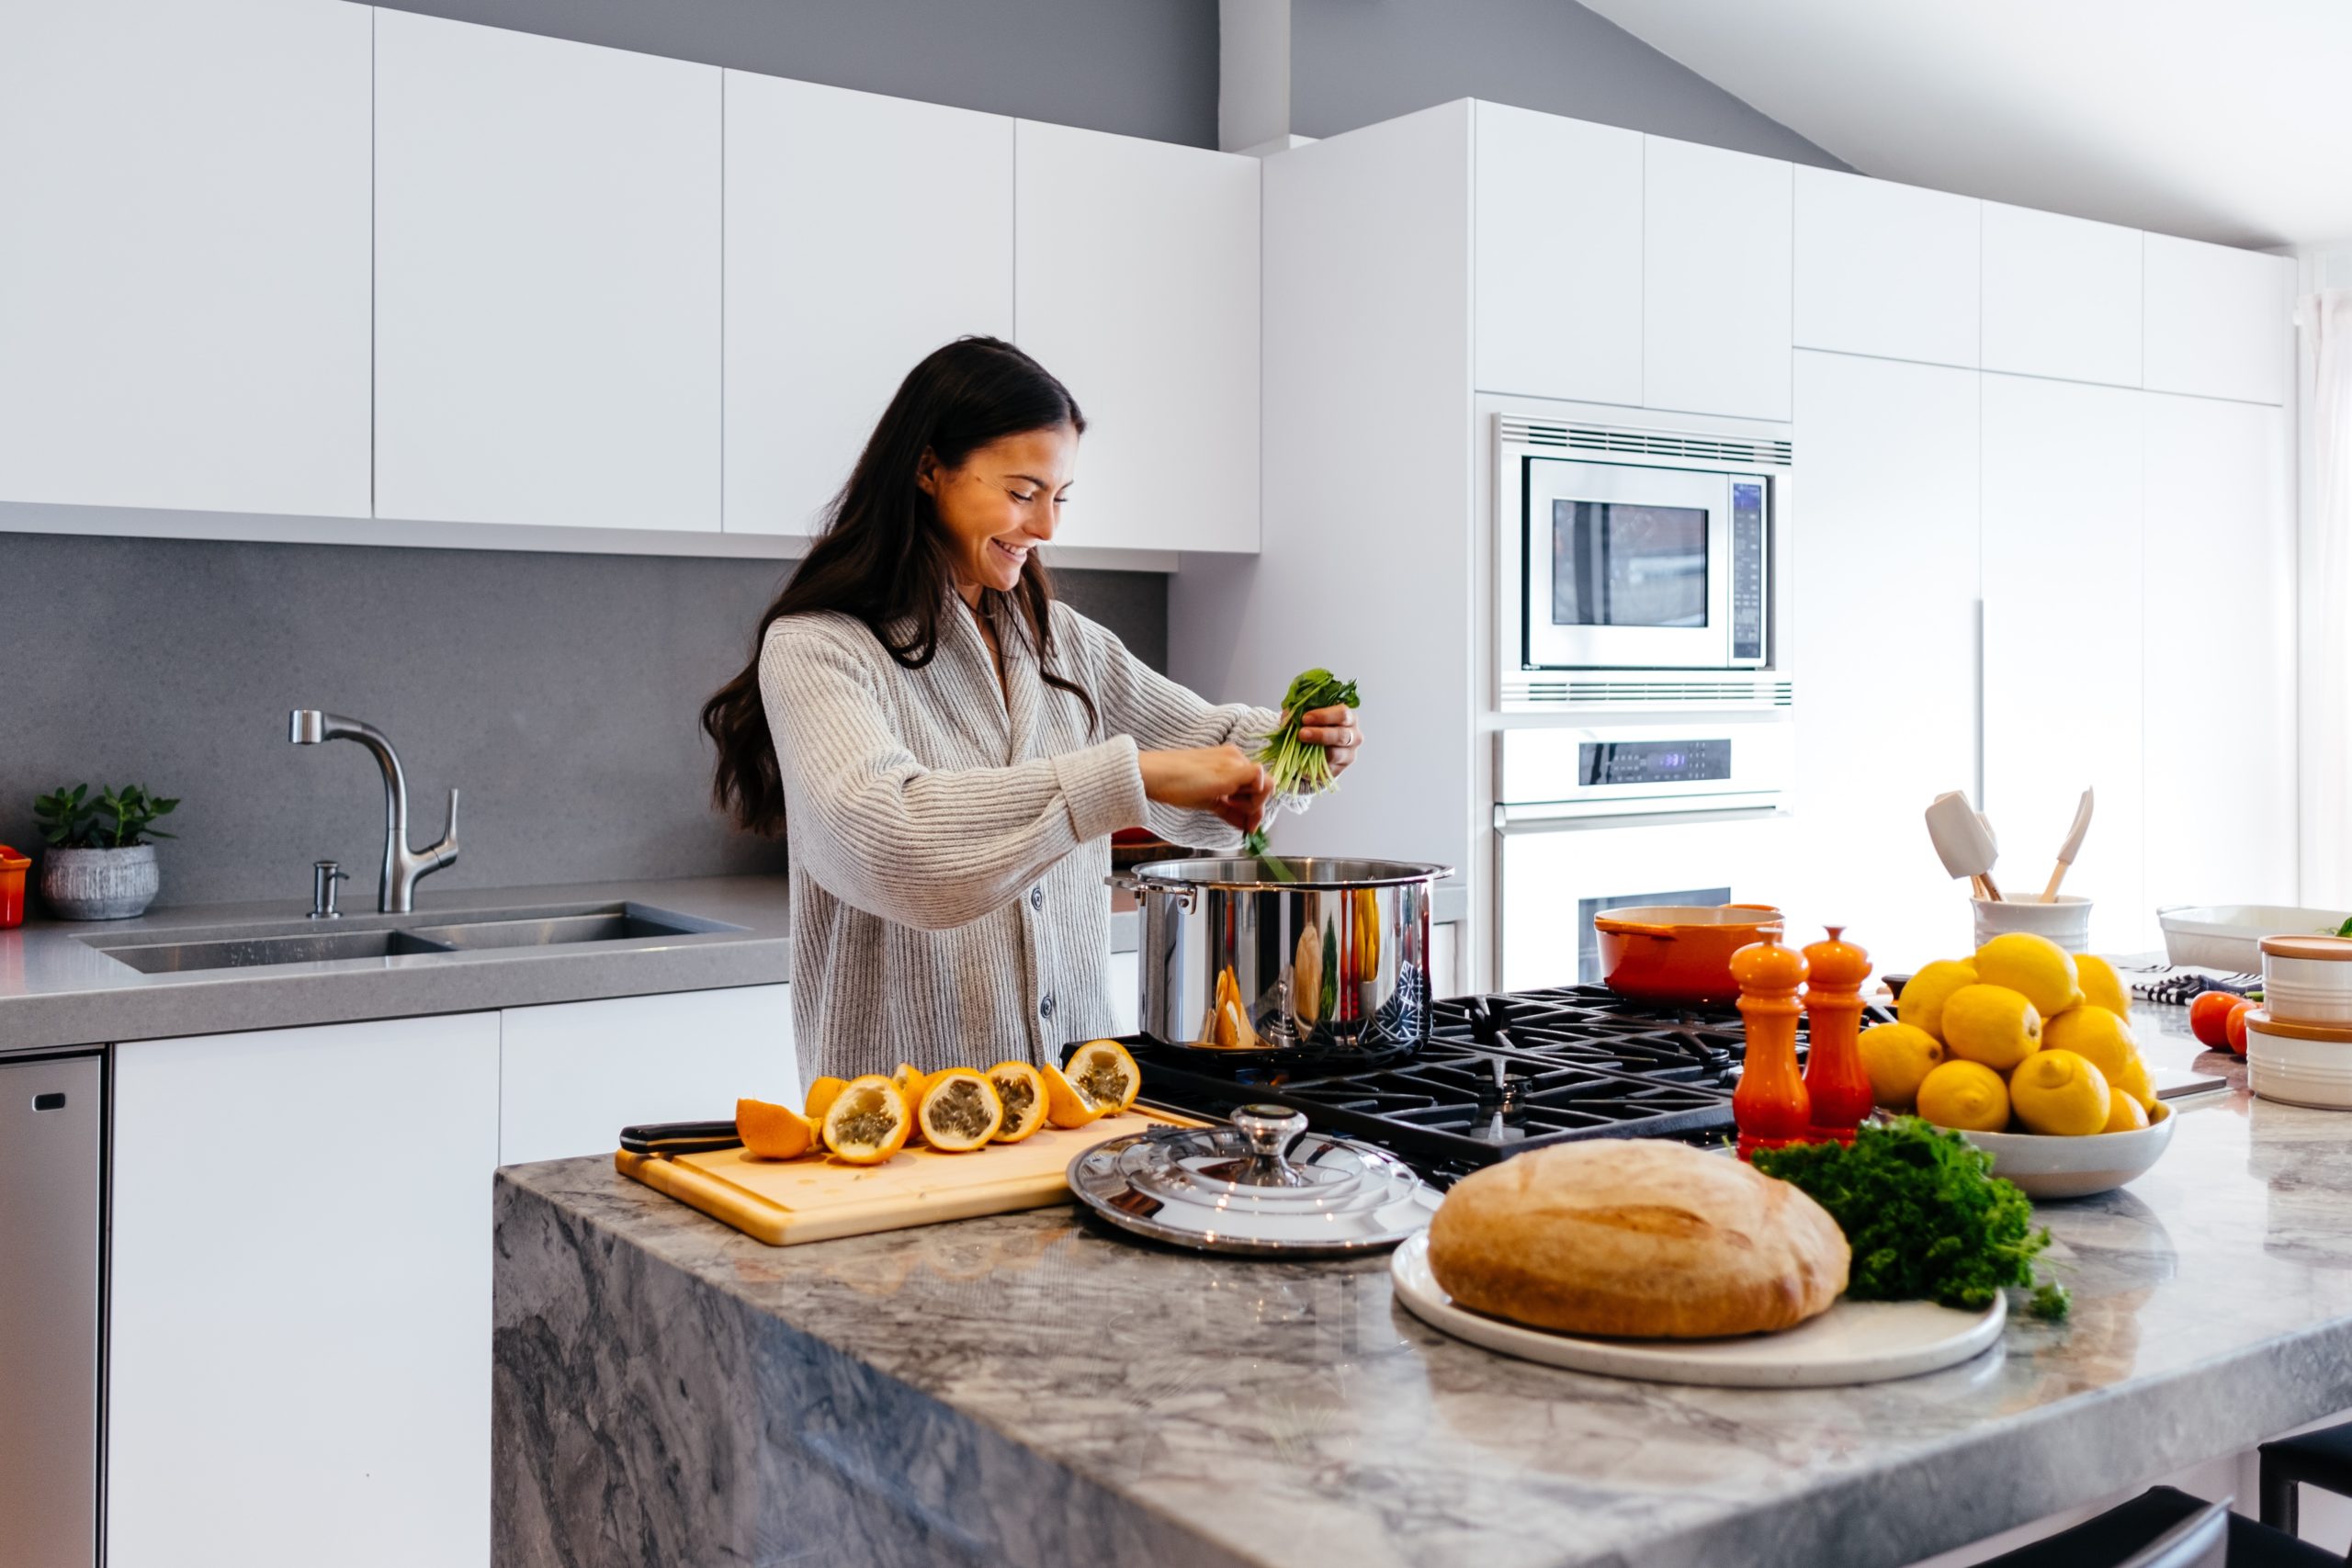 πώς να εξοικονομήσετε χρόνο και χρήματα όταν μαγειρεύετε στο σπίτι – το έξυπνο κόλπο που προτείνει ειδικός